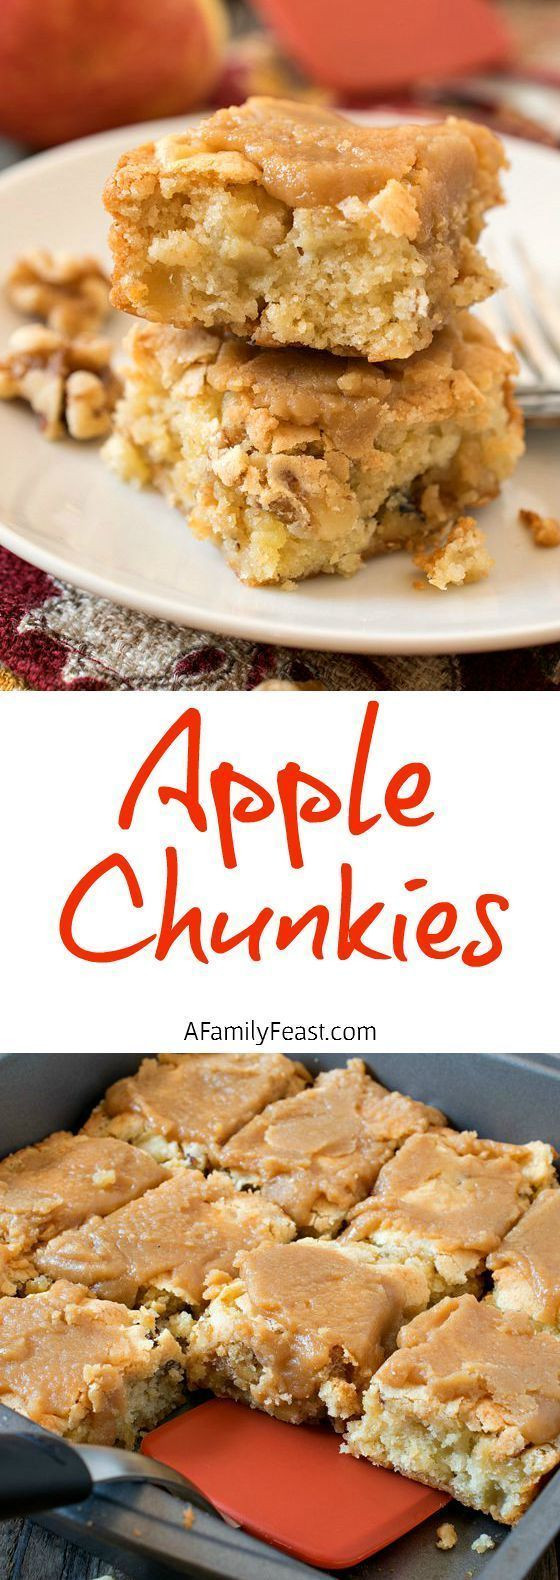 Quick Fall Desserts
 Best 25 Quick apple dessert ideas on Pinterest